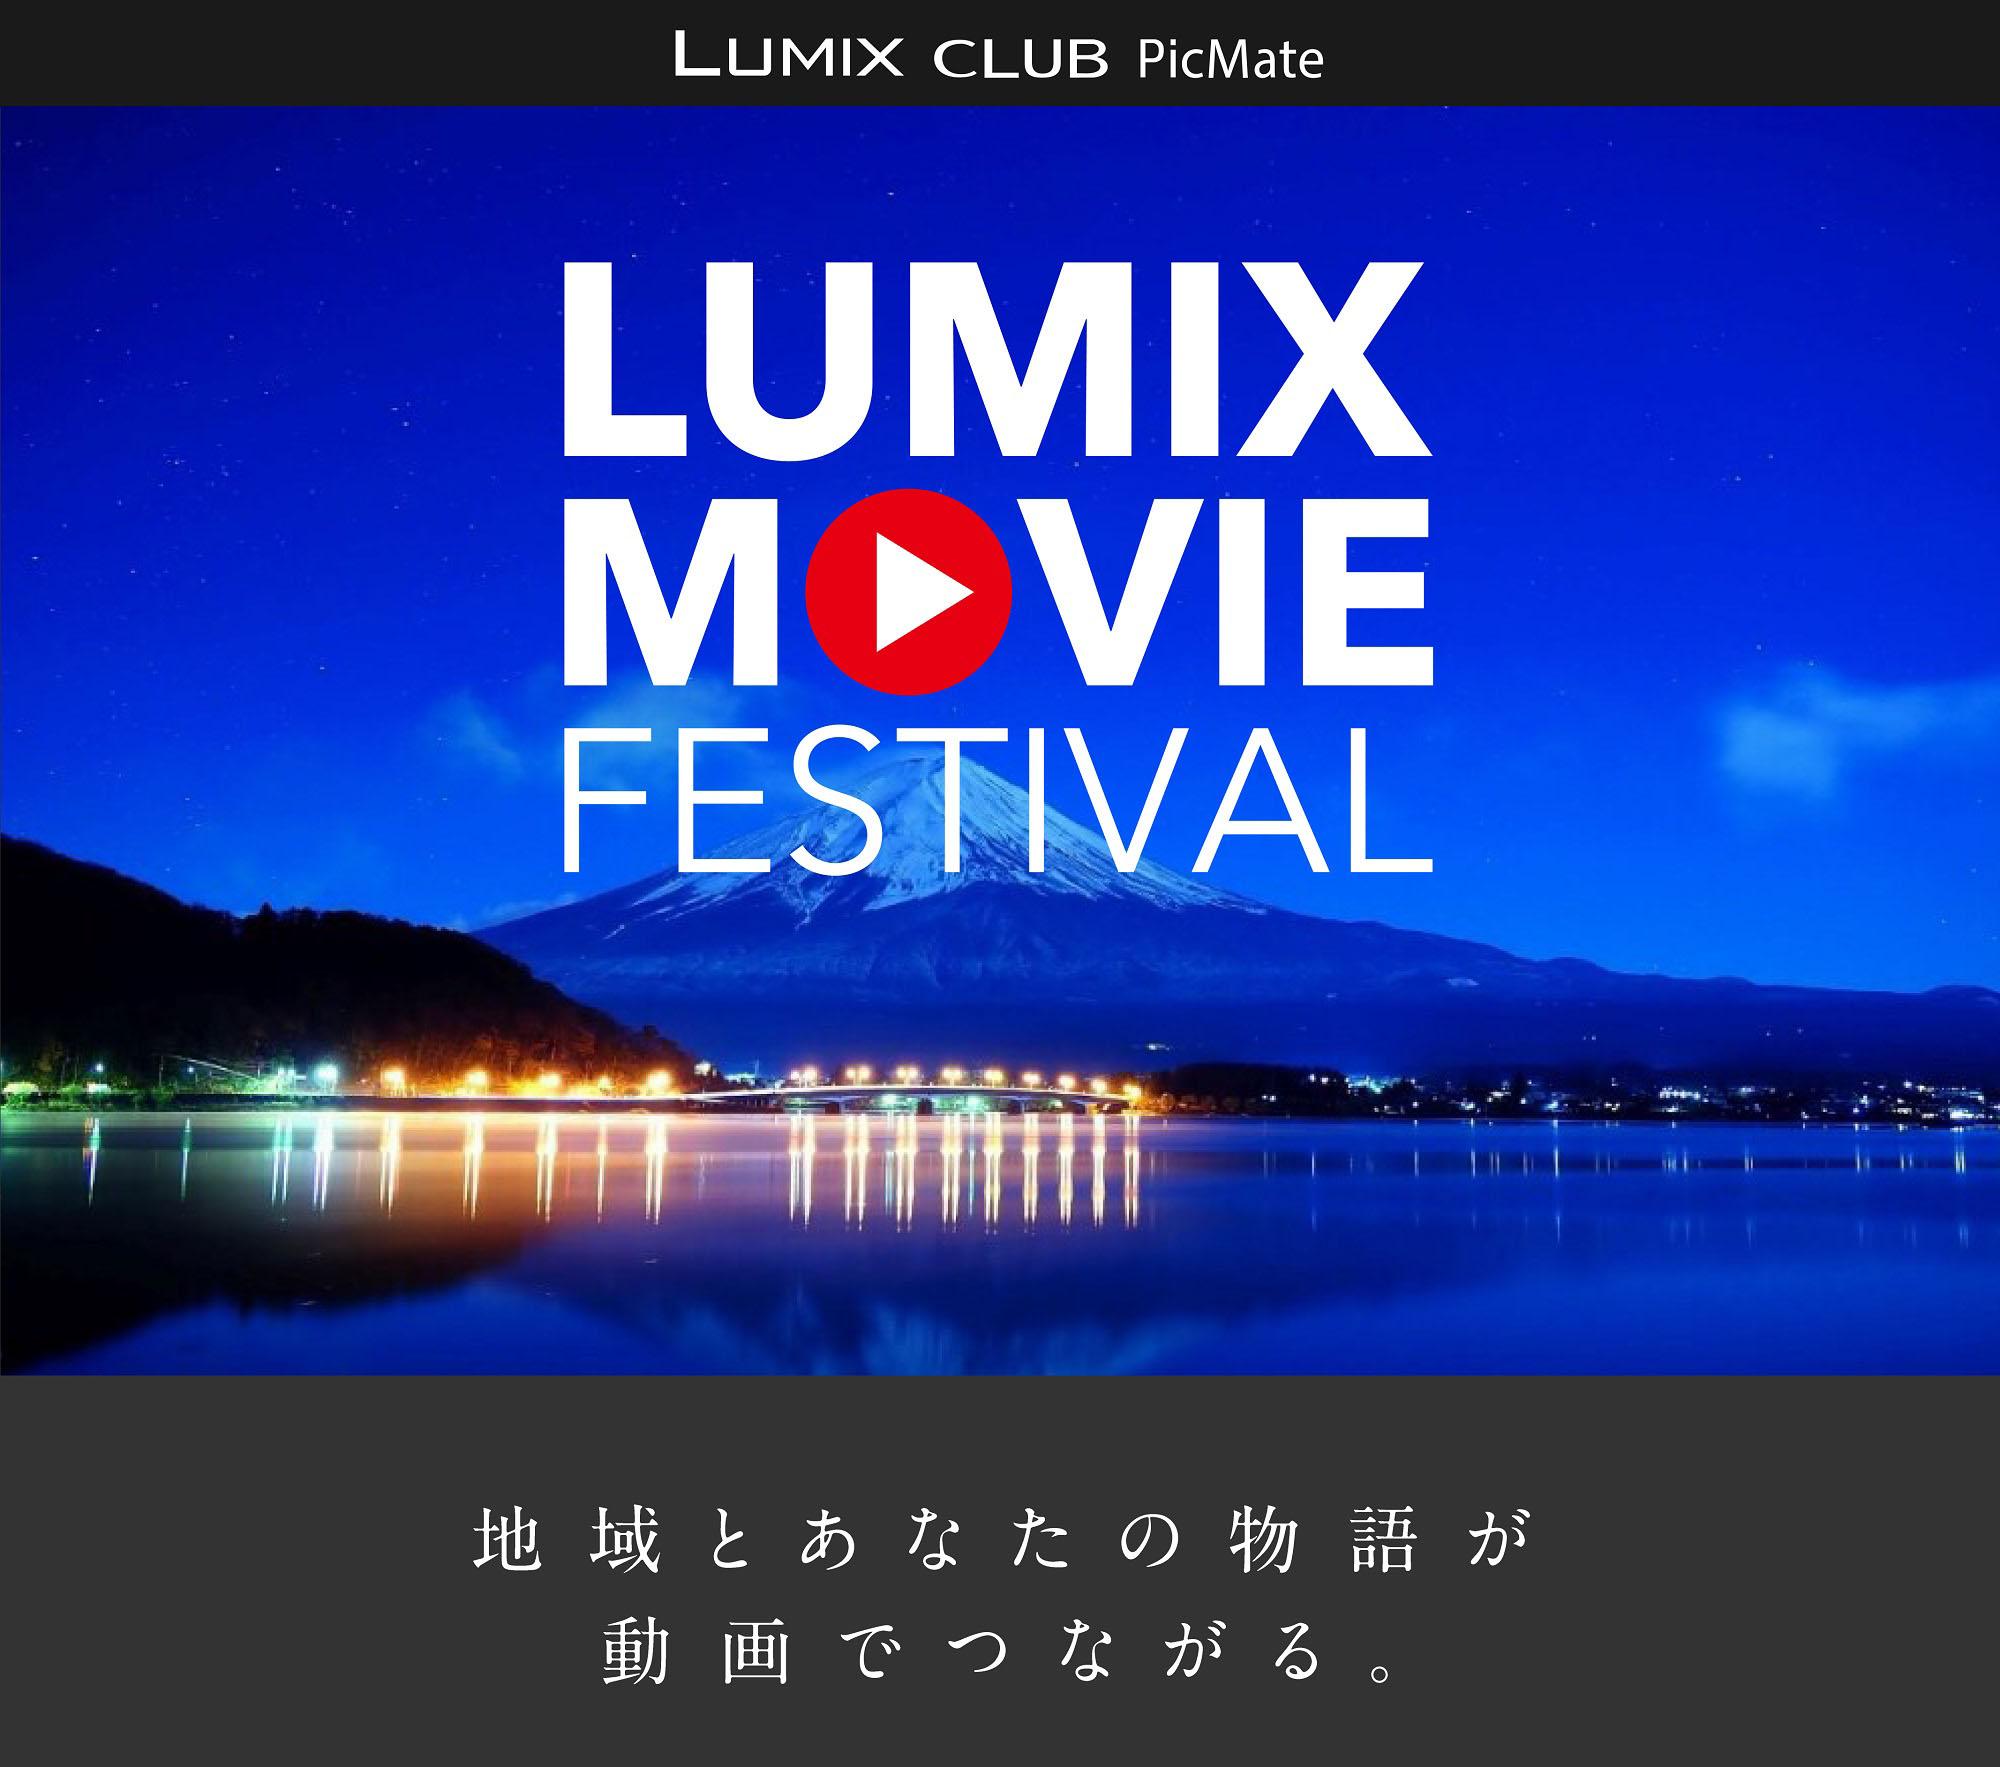 「LUMIX CLUB PicMate」が動画祭「LUMIX MOVIE FESTIVAL」を開催